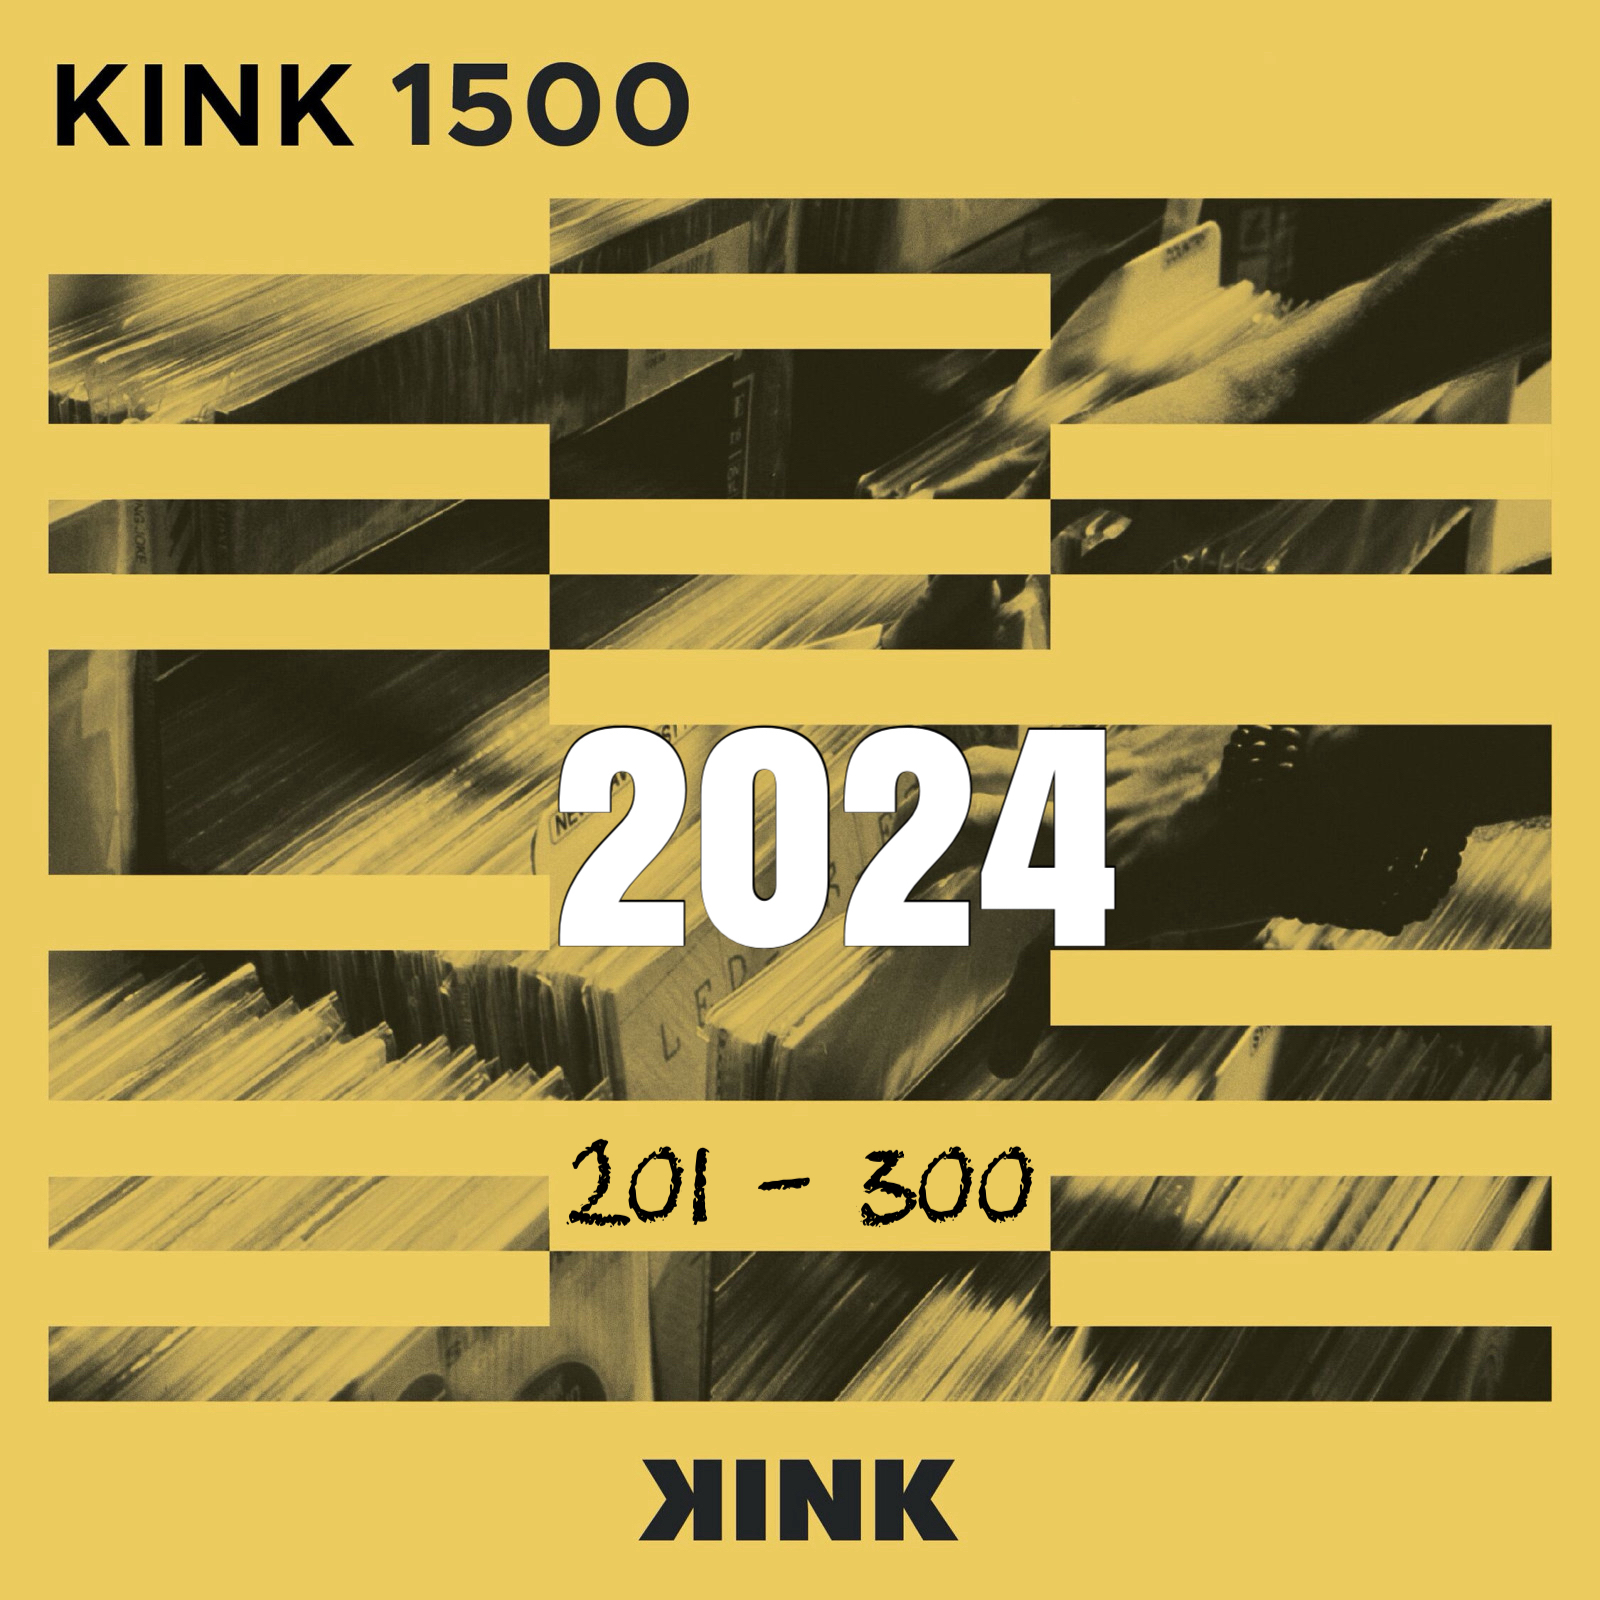 VA - Kink 1500 (2024) (0201- 0300)